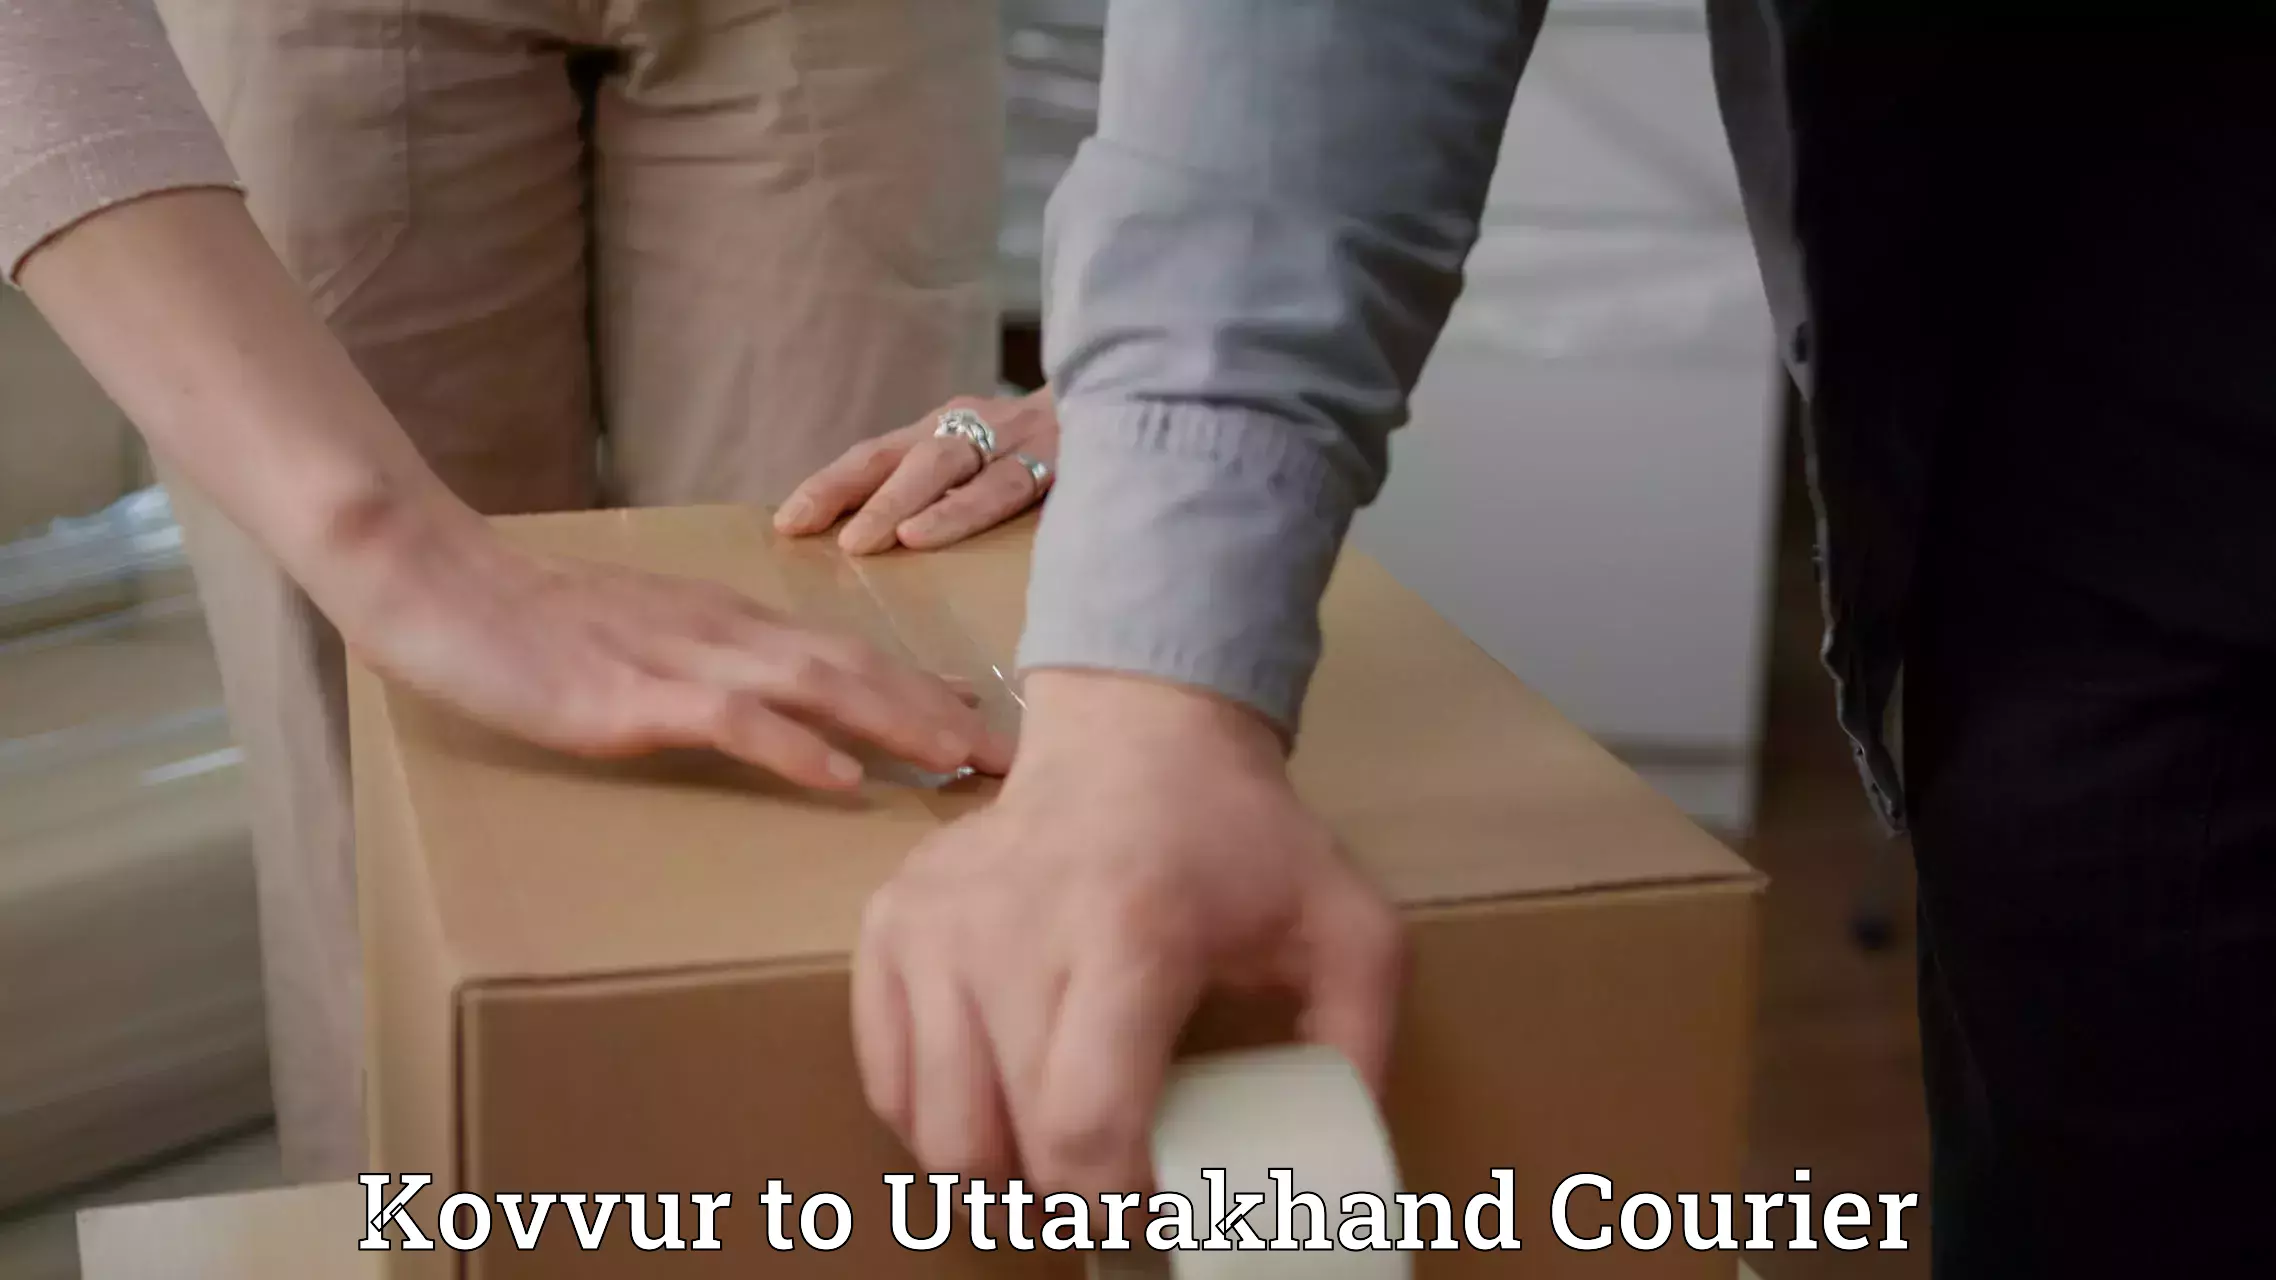 Subscription-based courier Kovvur to Uttarakhand